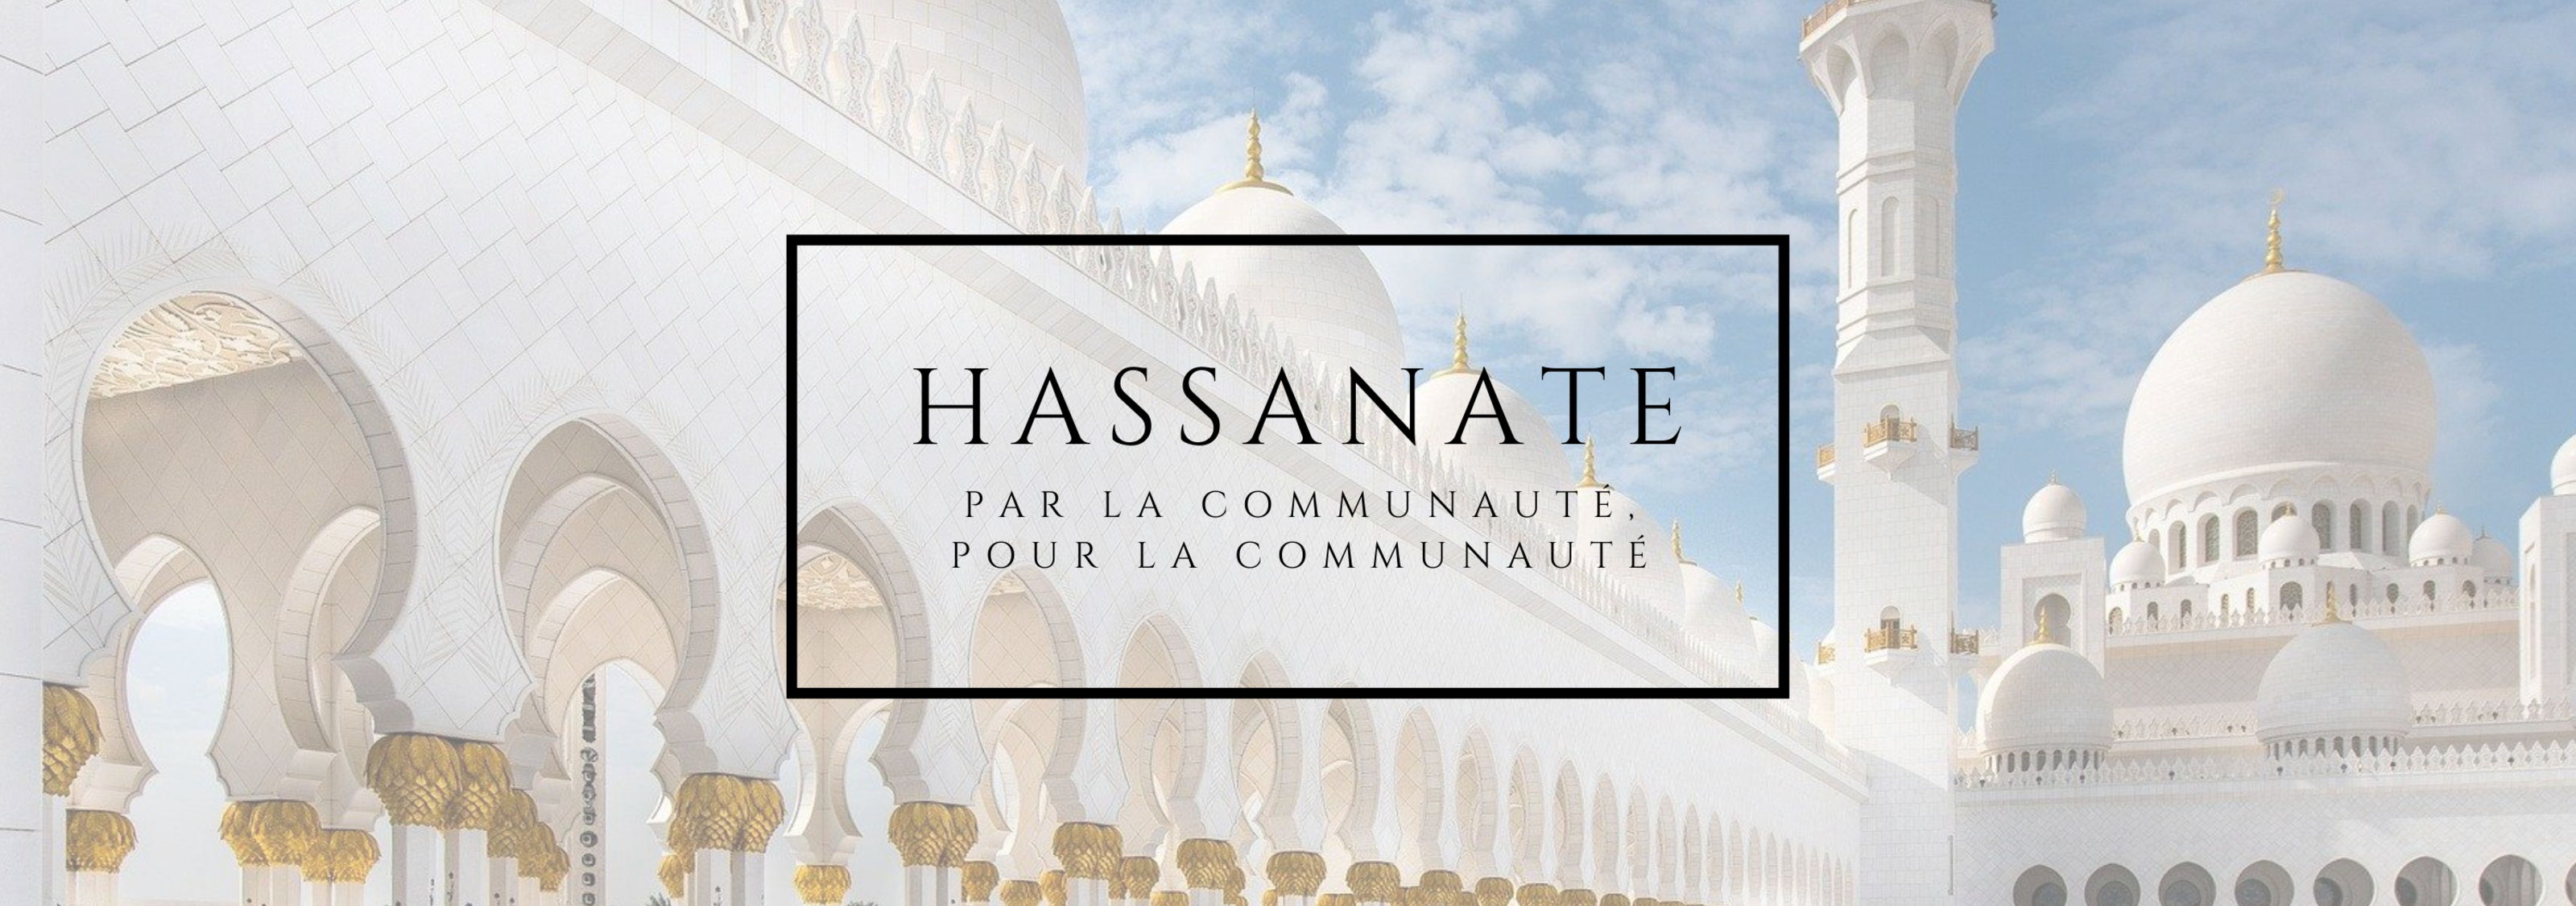 Hassanate